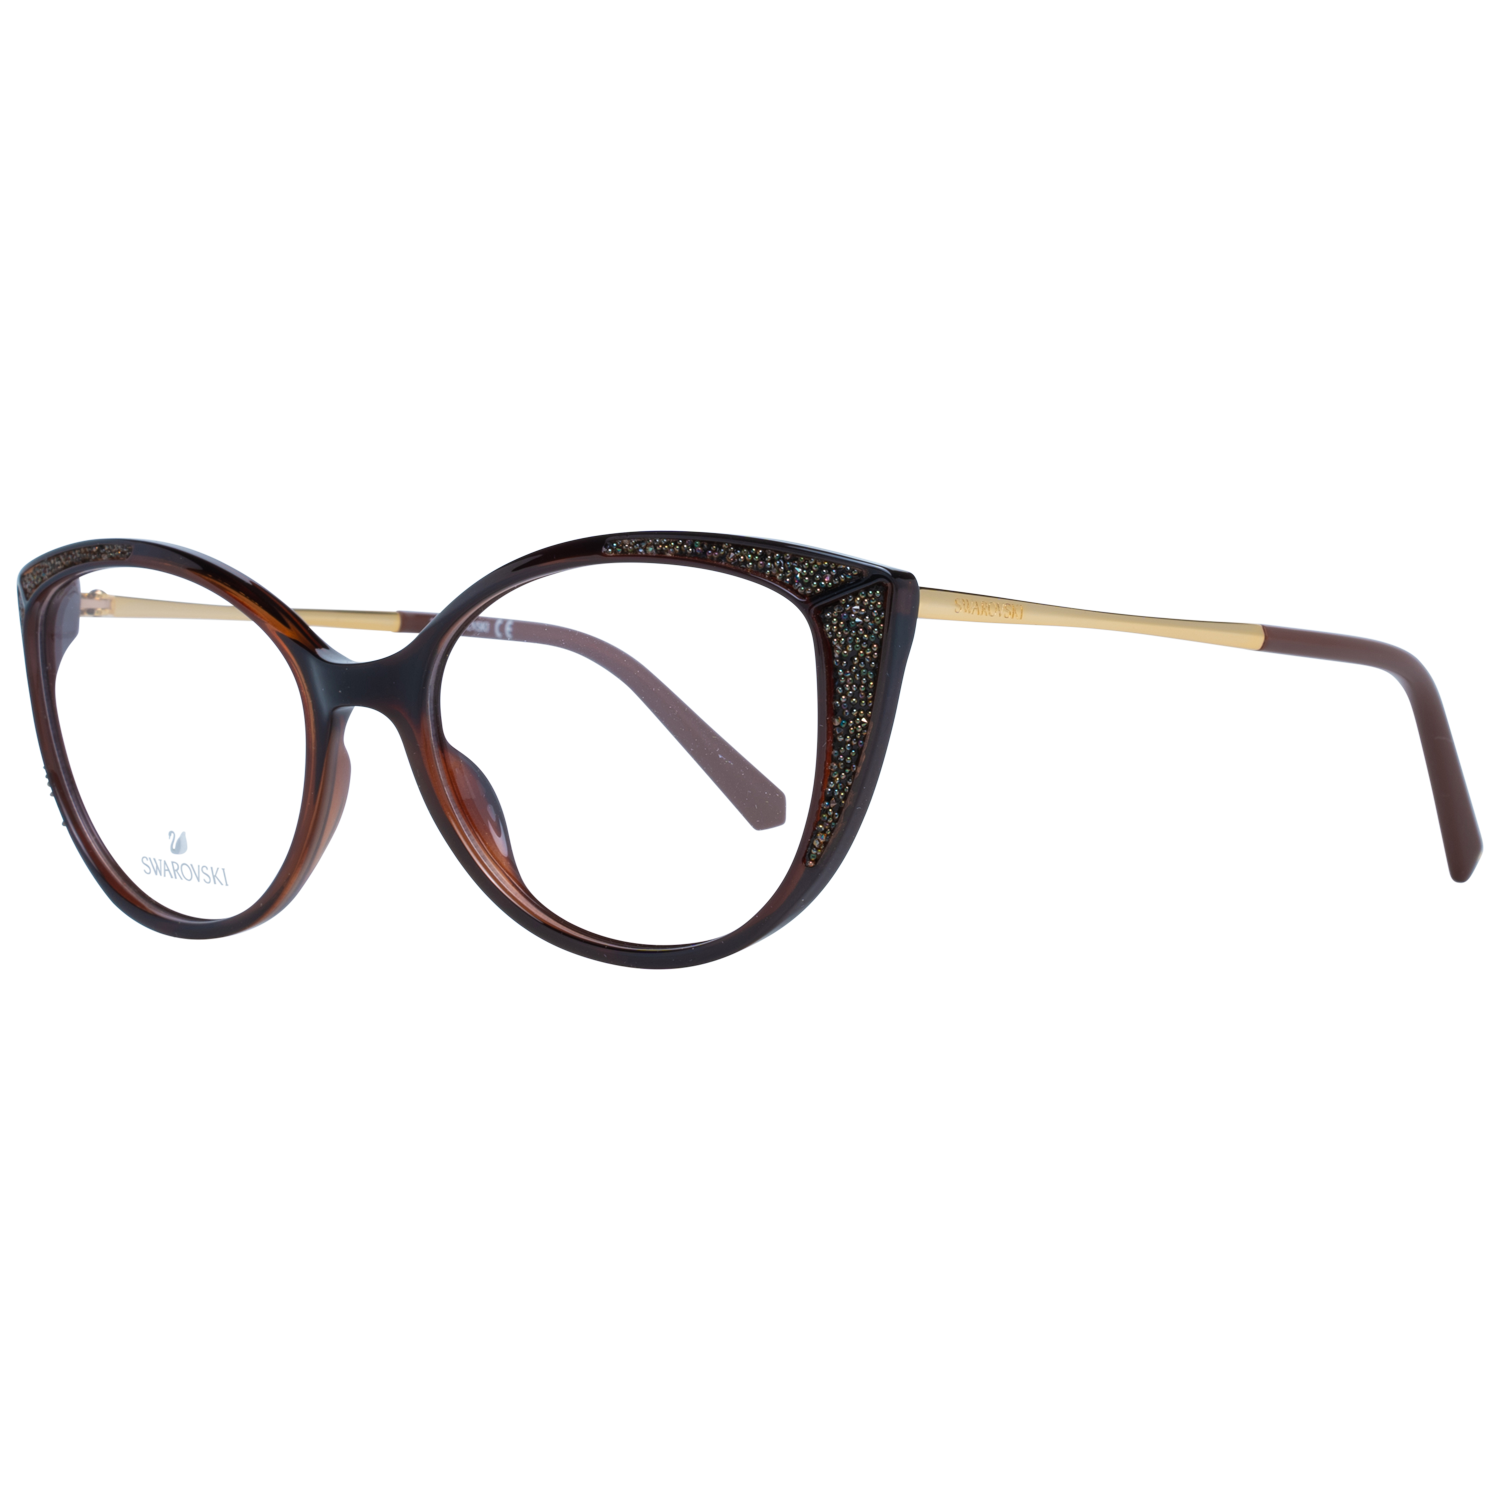 Swarovski Frames Swarovski Women Glasses Optical Frame SK5362 048 53 Eyeglasses Eyewear UK USA Australia 